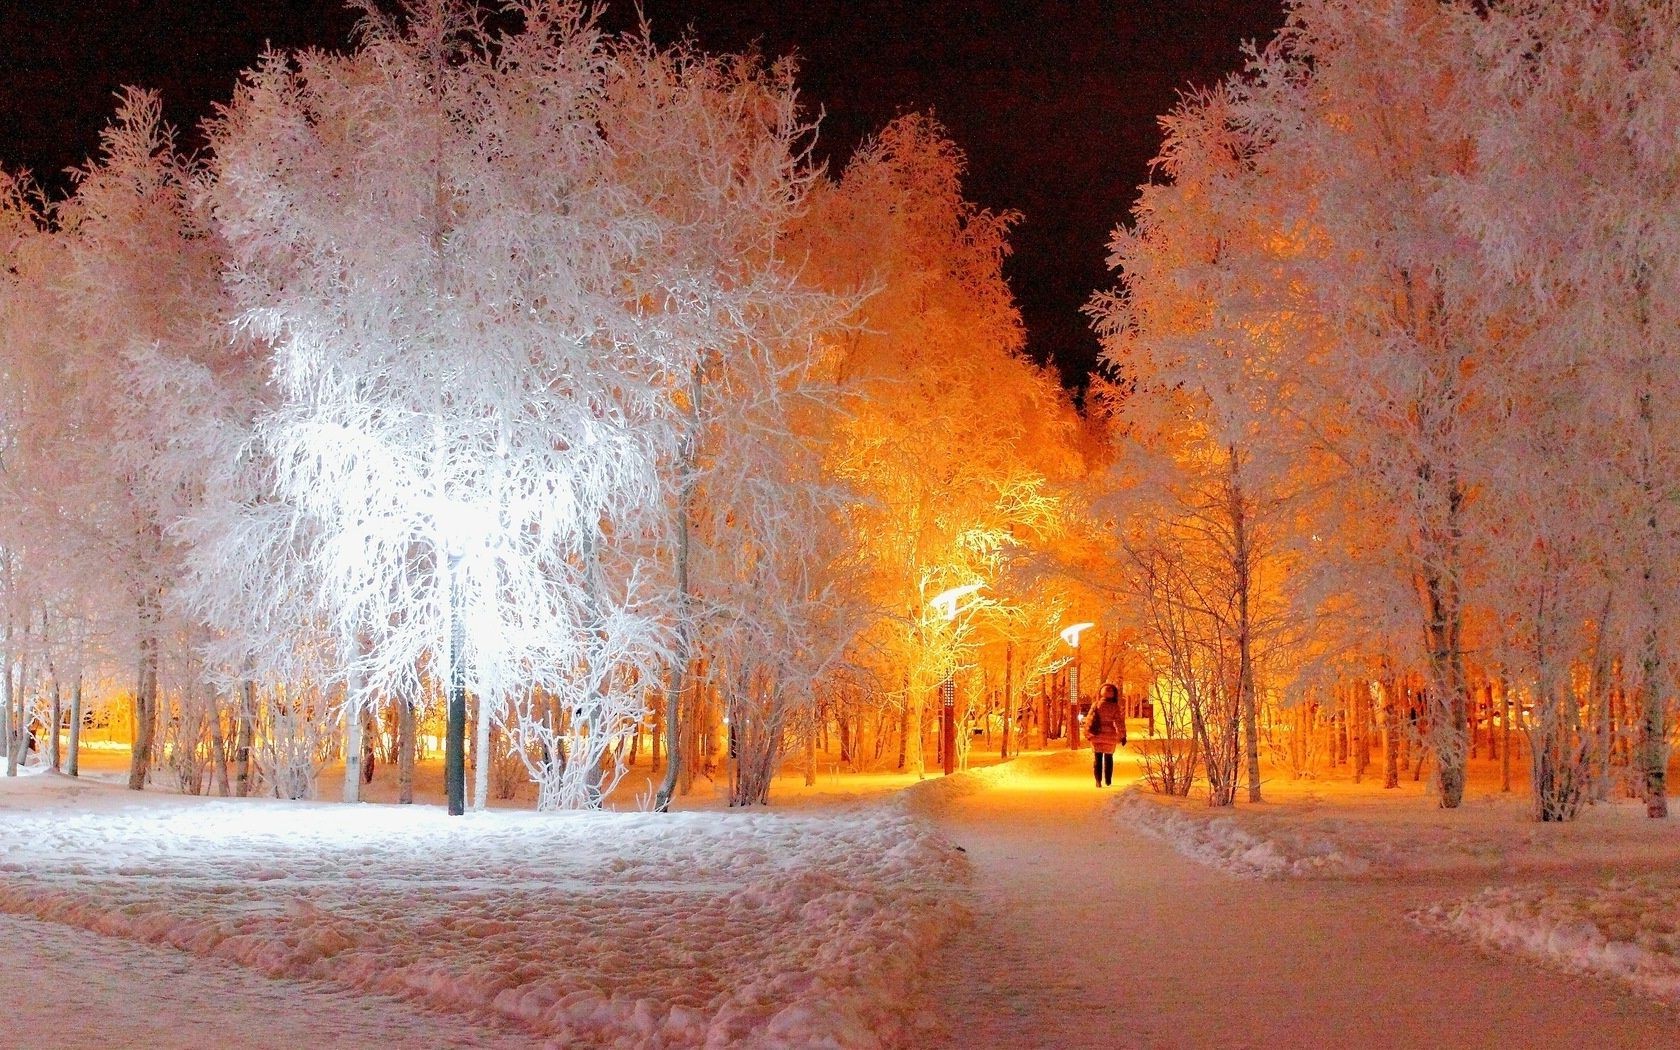 зима снег мороз осень дерево холодная на открытом воздухе пейзаж древесины замороженные природа погода сезон лед свет туман дорога лист парк